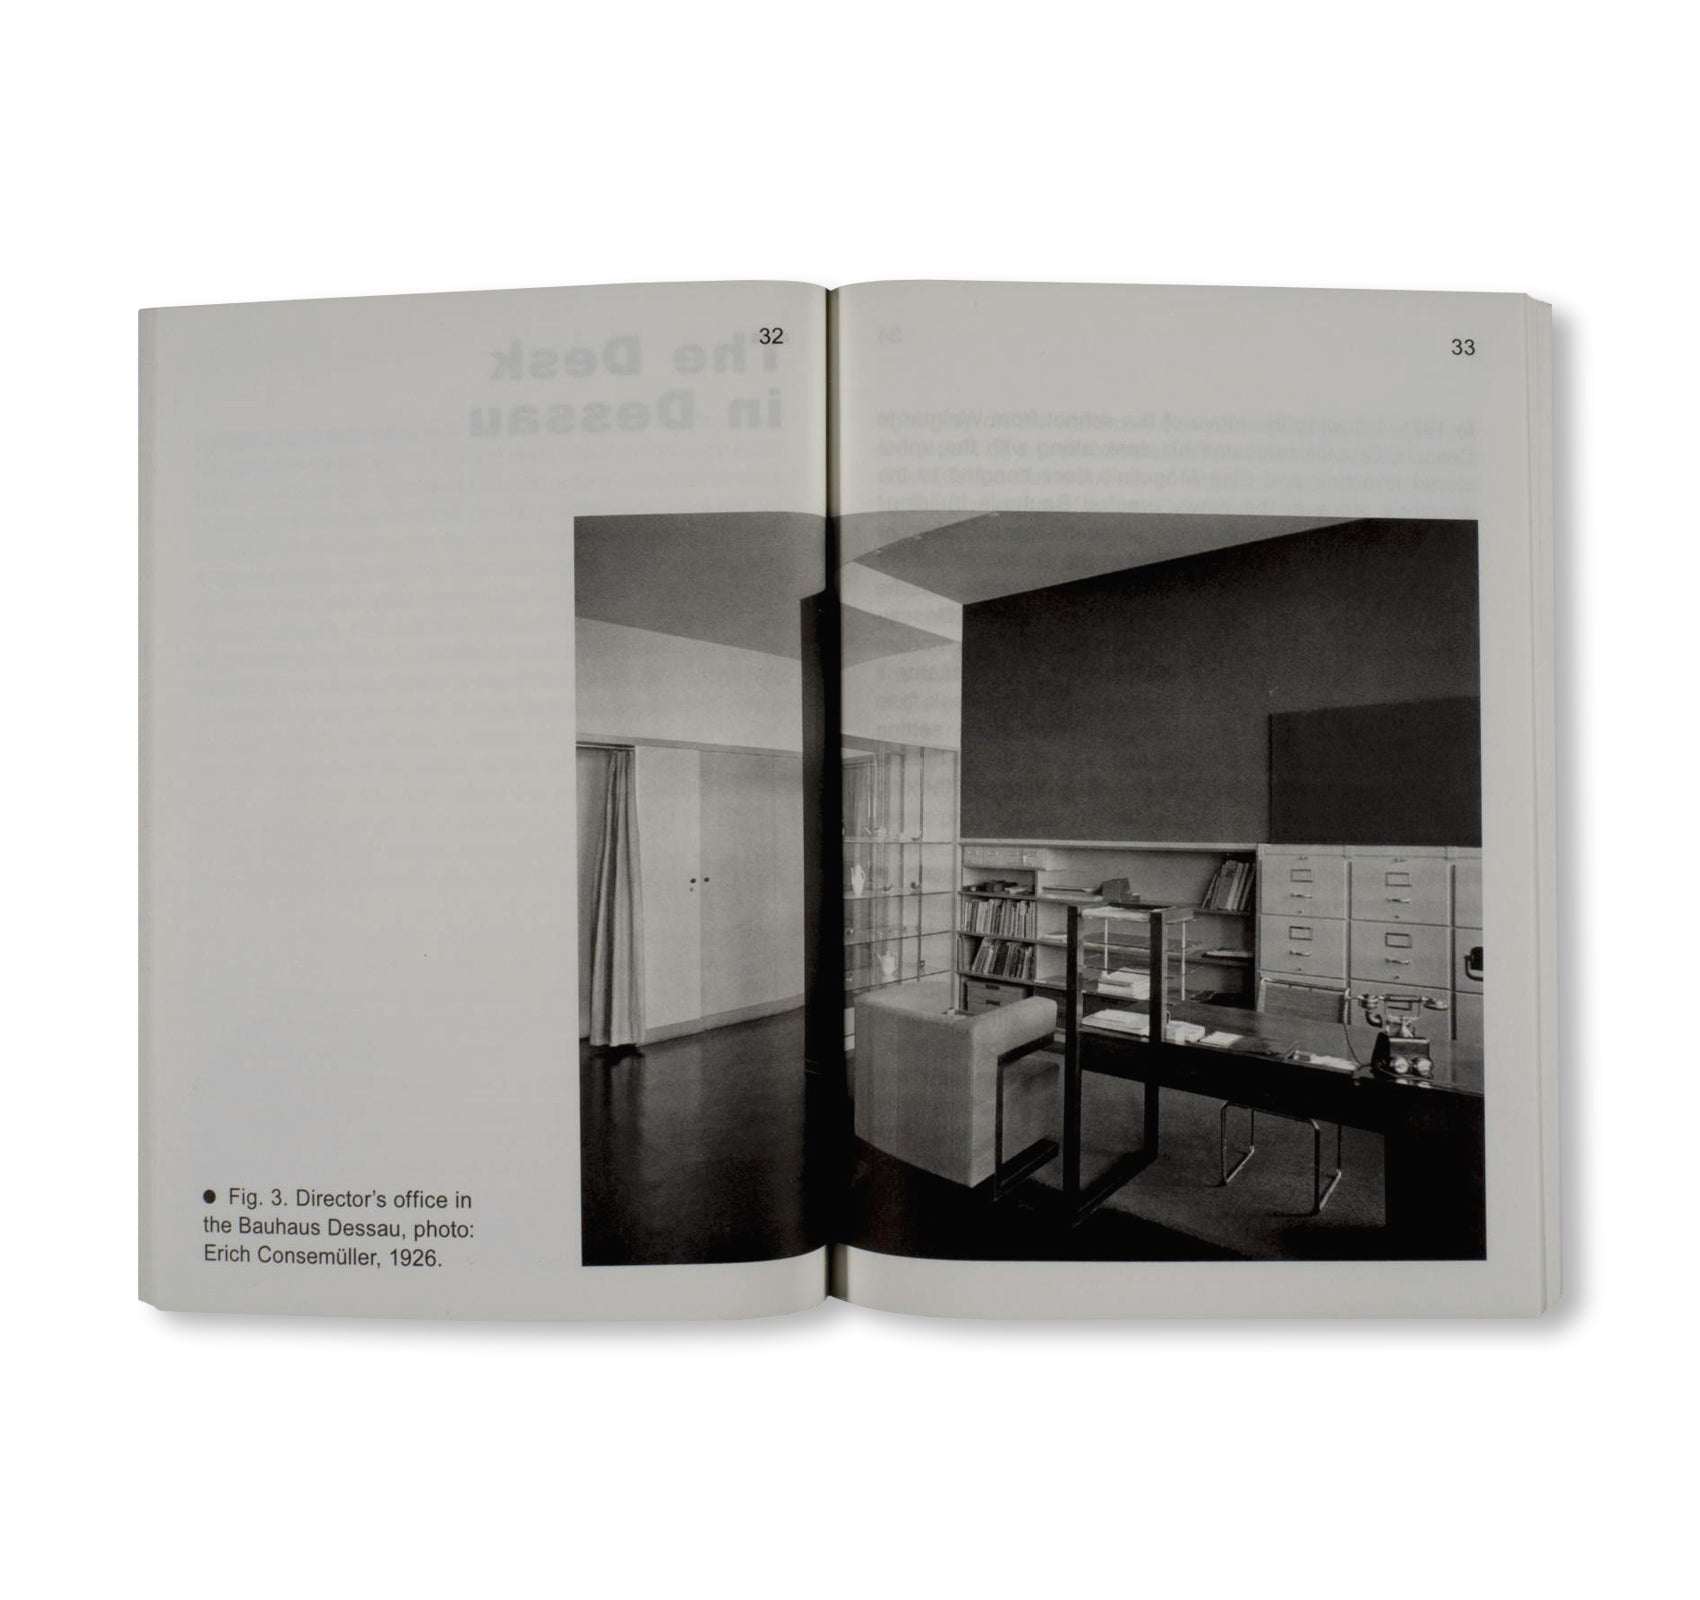 DESK IN EXILE / Bauhaus Paperback 20 by Bauhaus Lab 2016, Stiftung Bauhaus Dessau